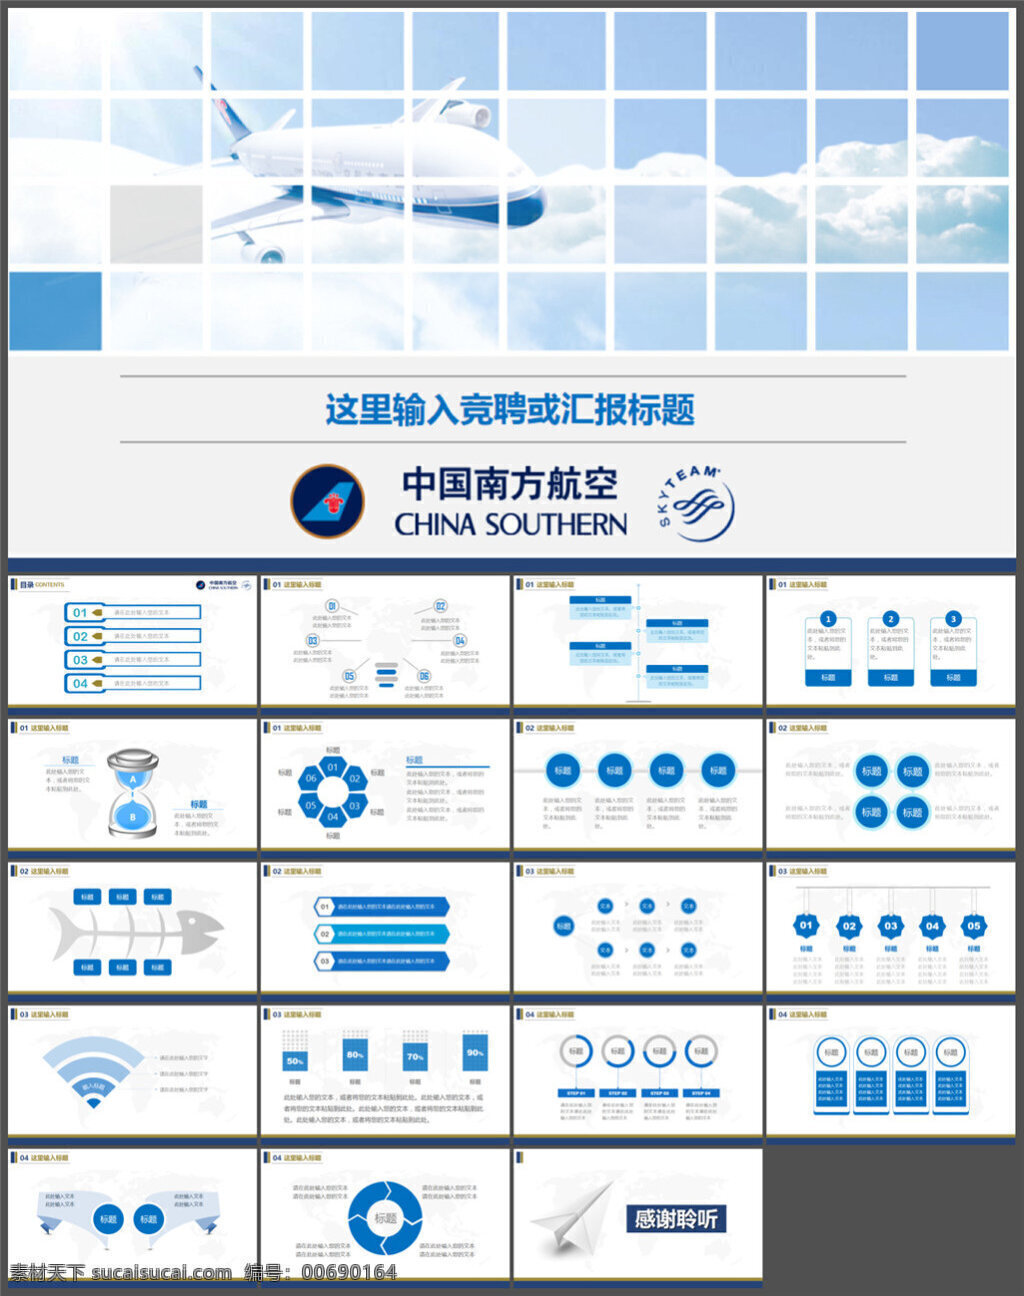 航空公司 工作总结 汇报 模板 图表 制作 多媒体 企业 动态 模版素材下载 ppt素材 pptx 白色